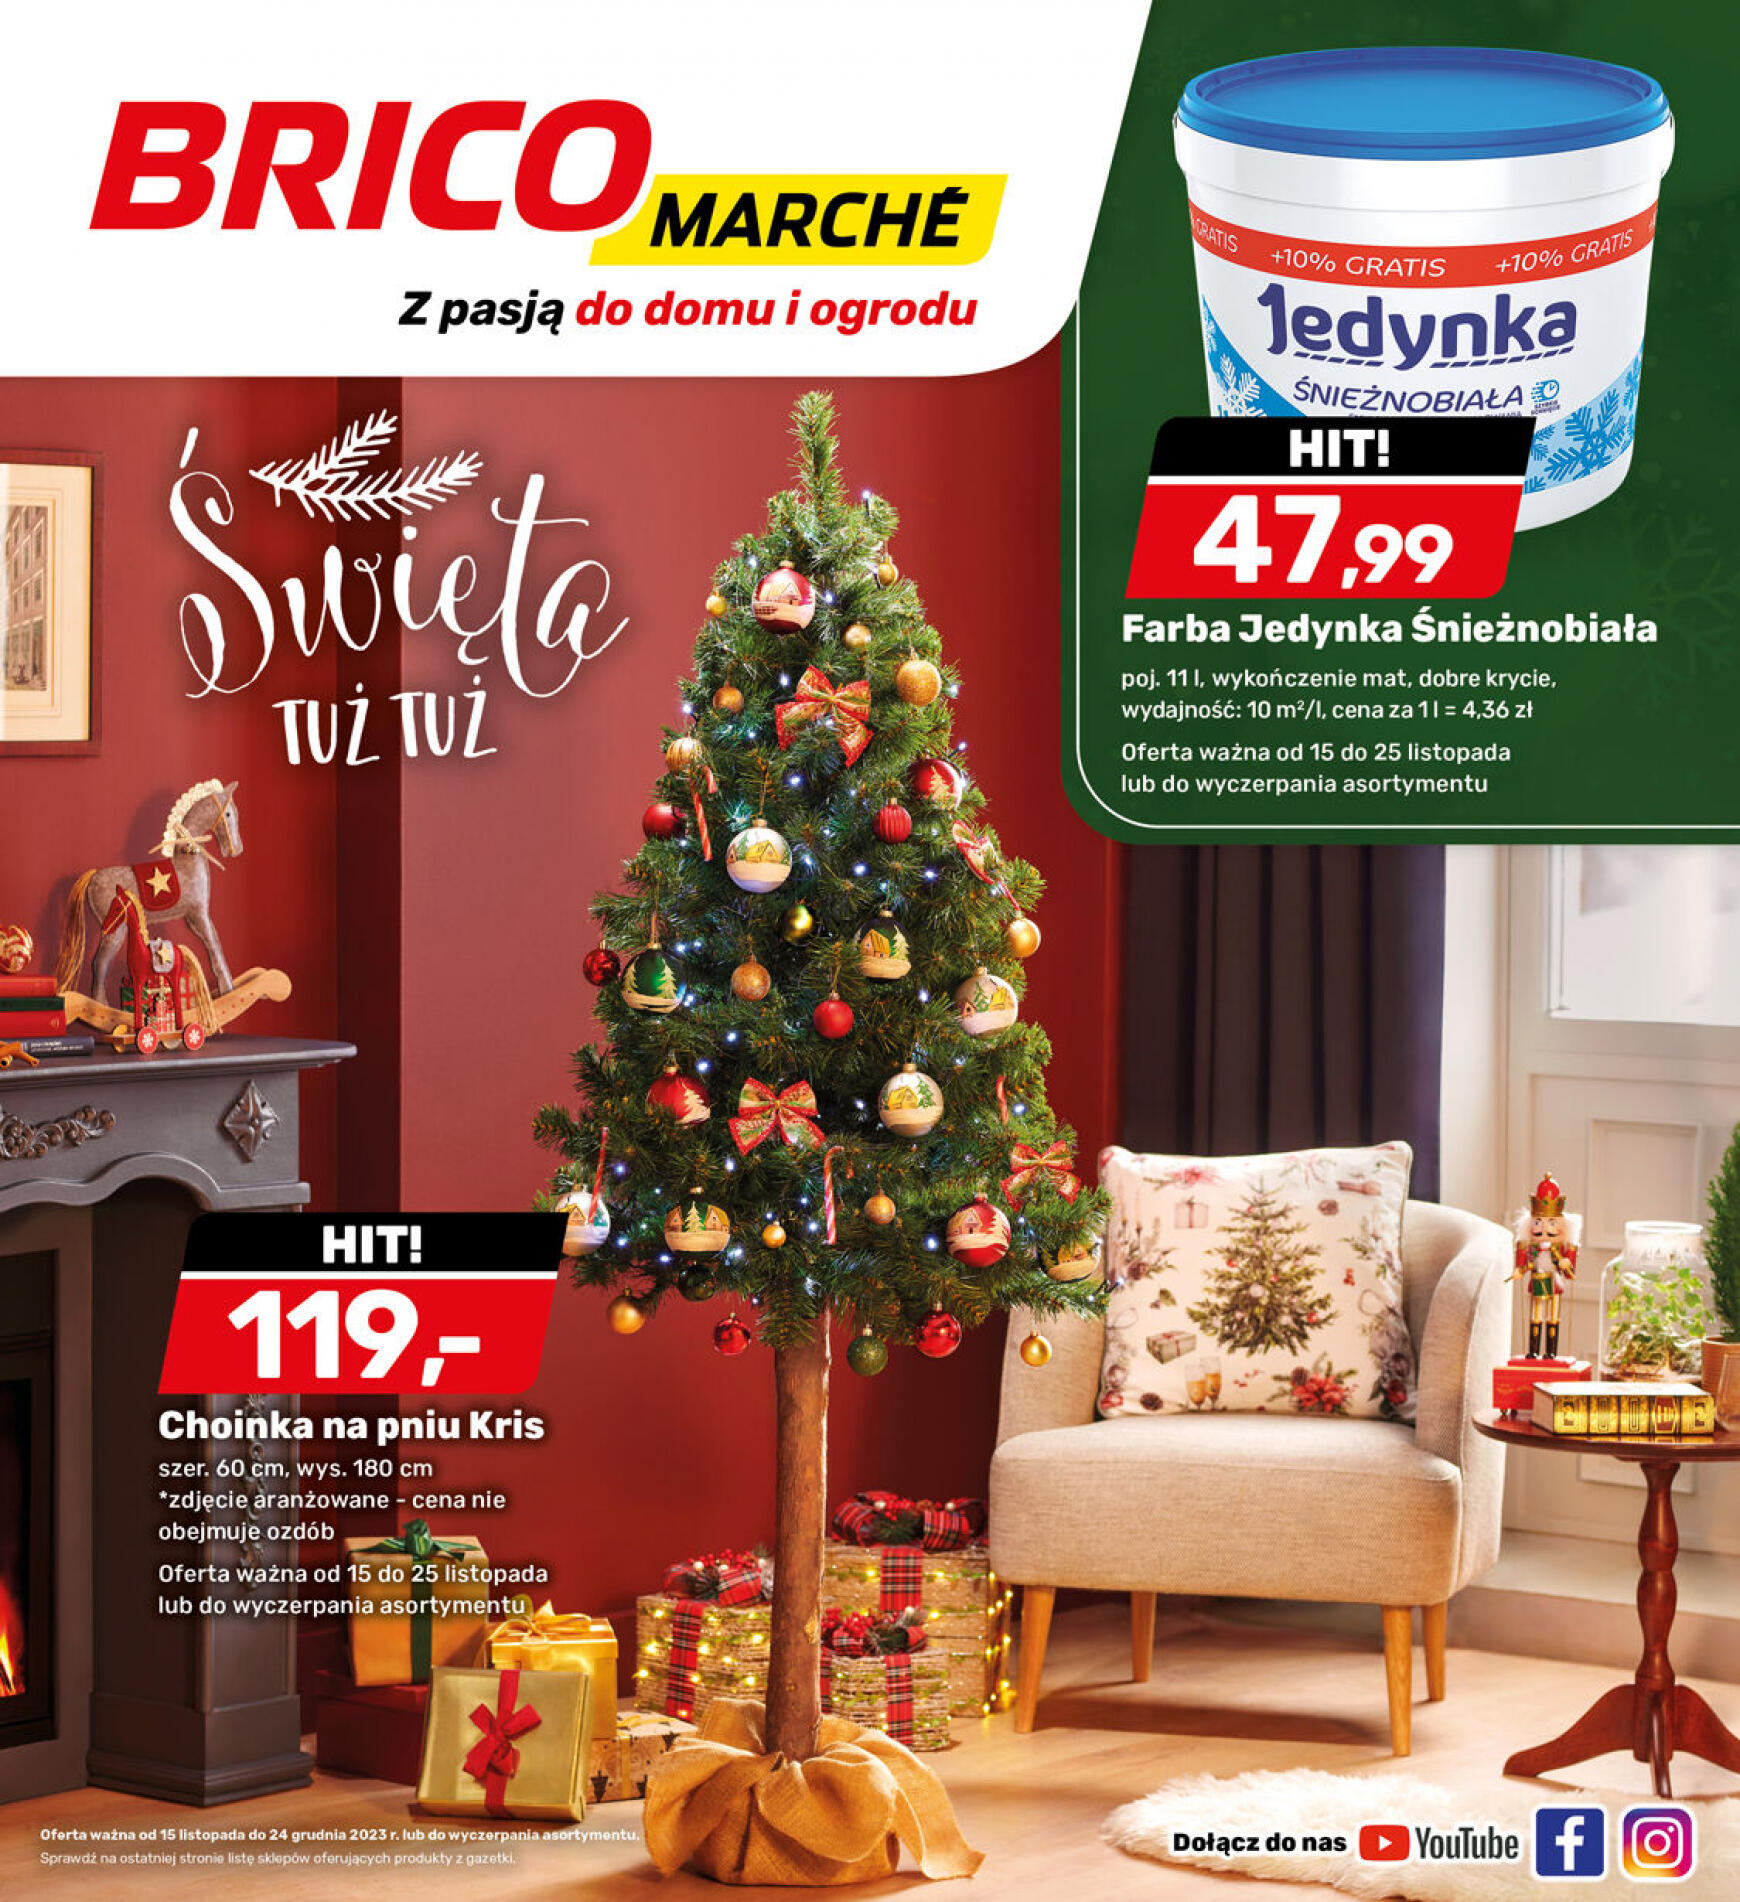 brico-marche - - Bricomarche - page: 5